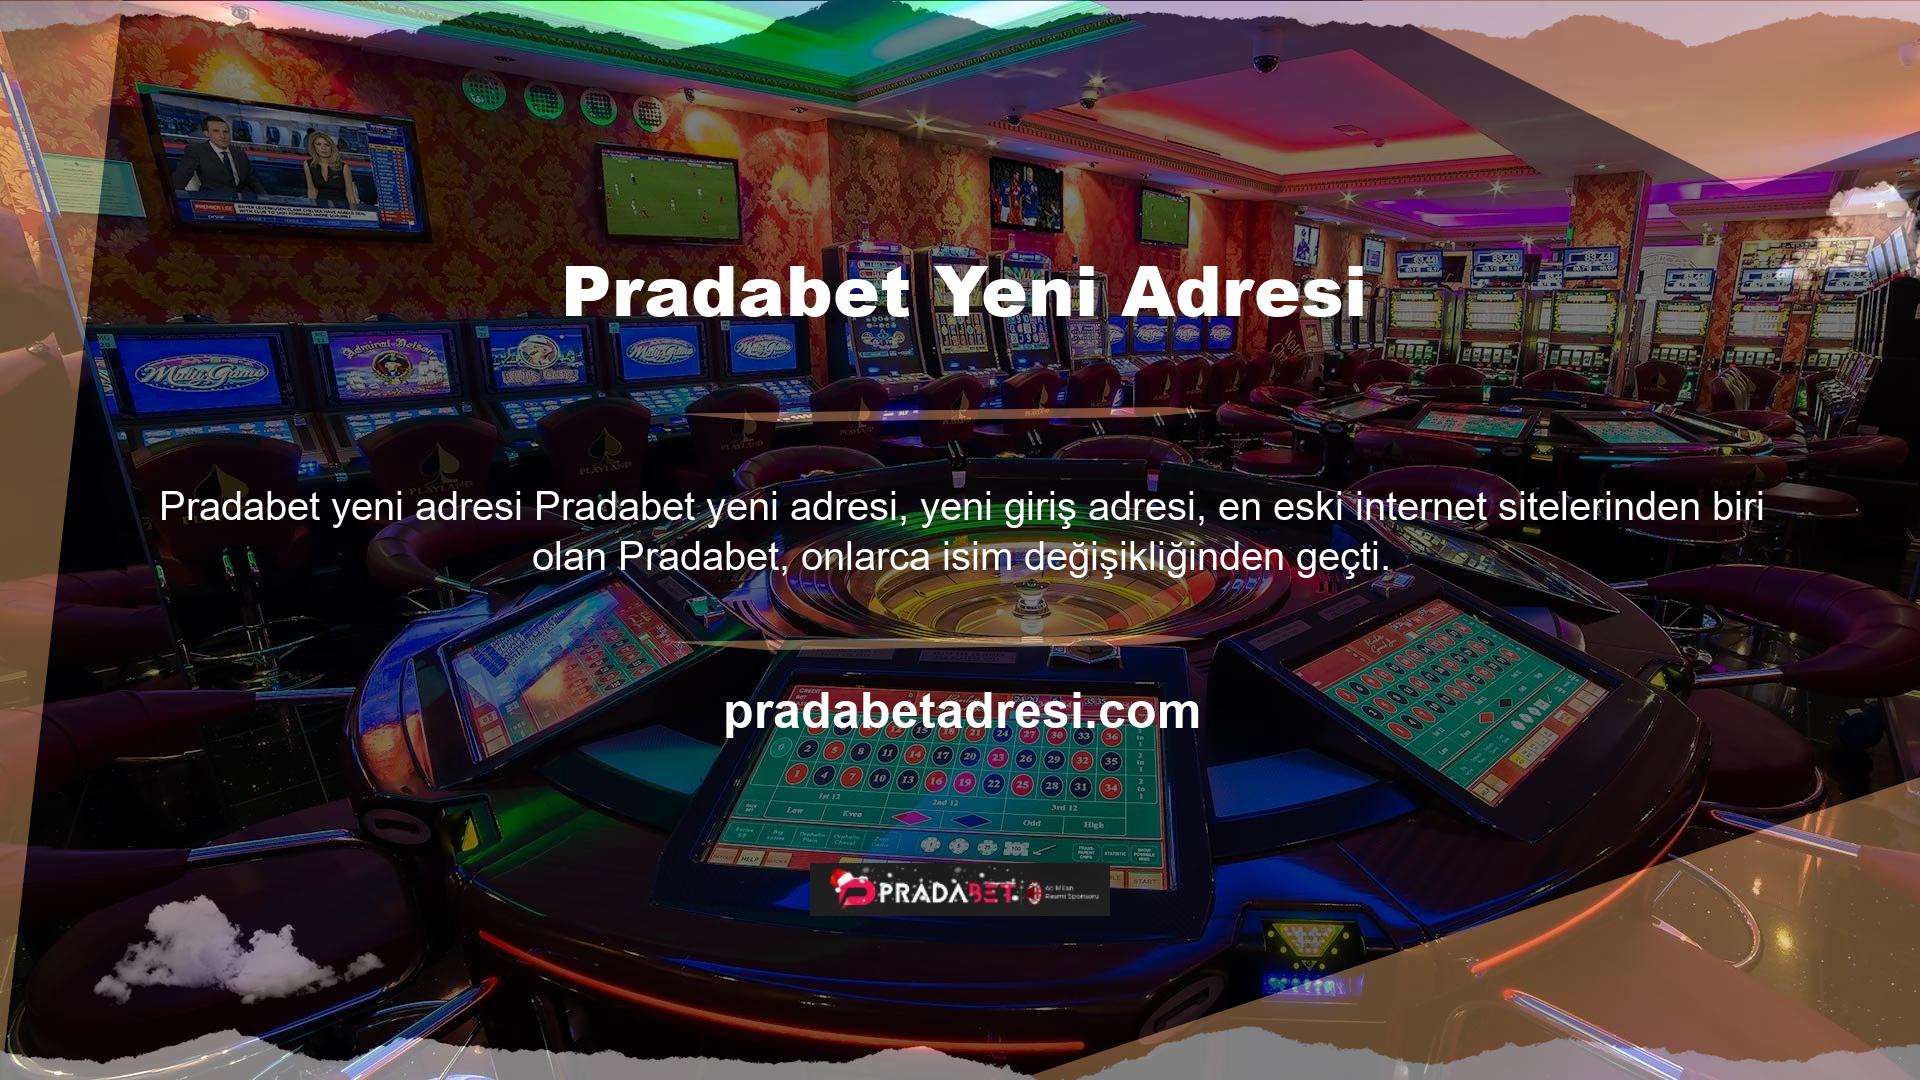 Türk web sitesi Pradabet artık Pradabet adını kullanıyor